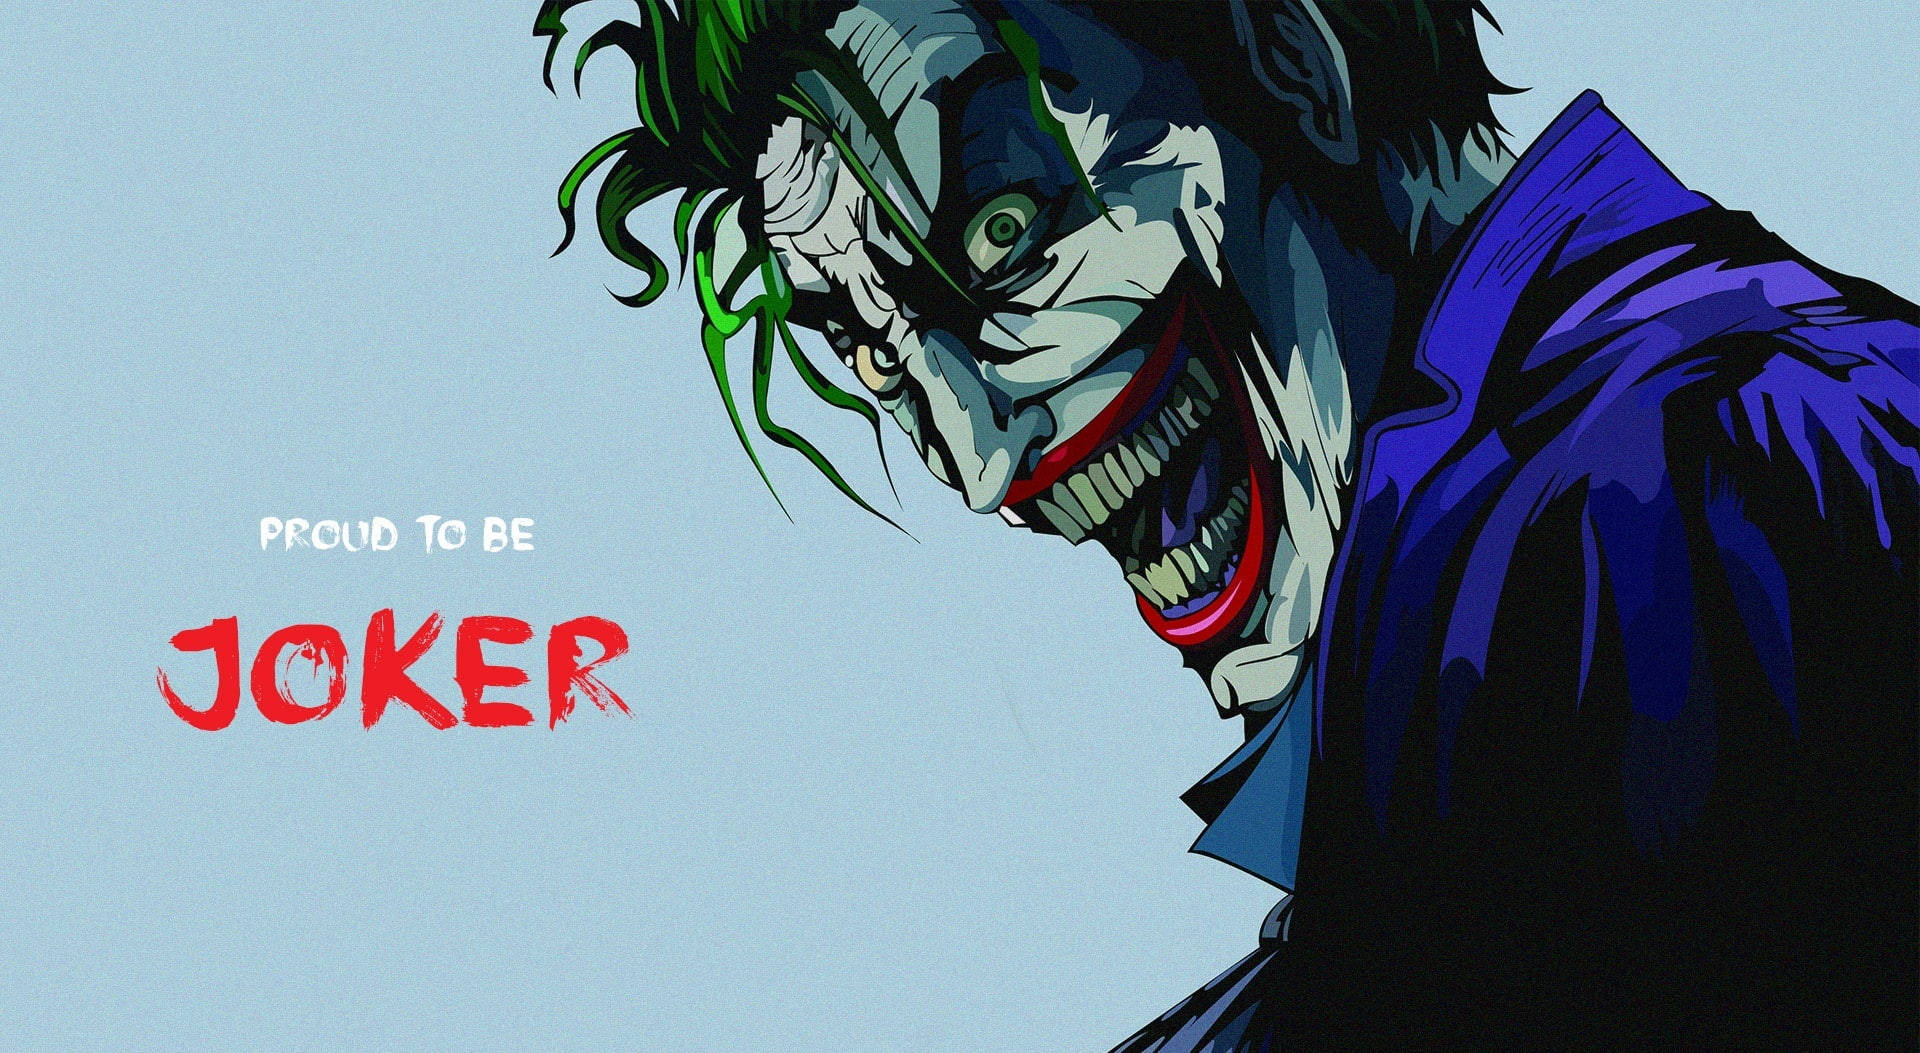 Joker Drawing Images - Free Download on Freepik